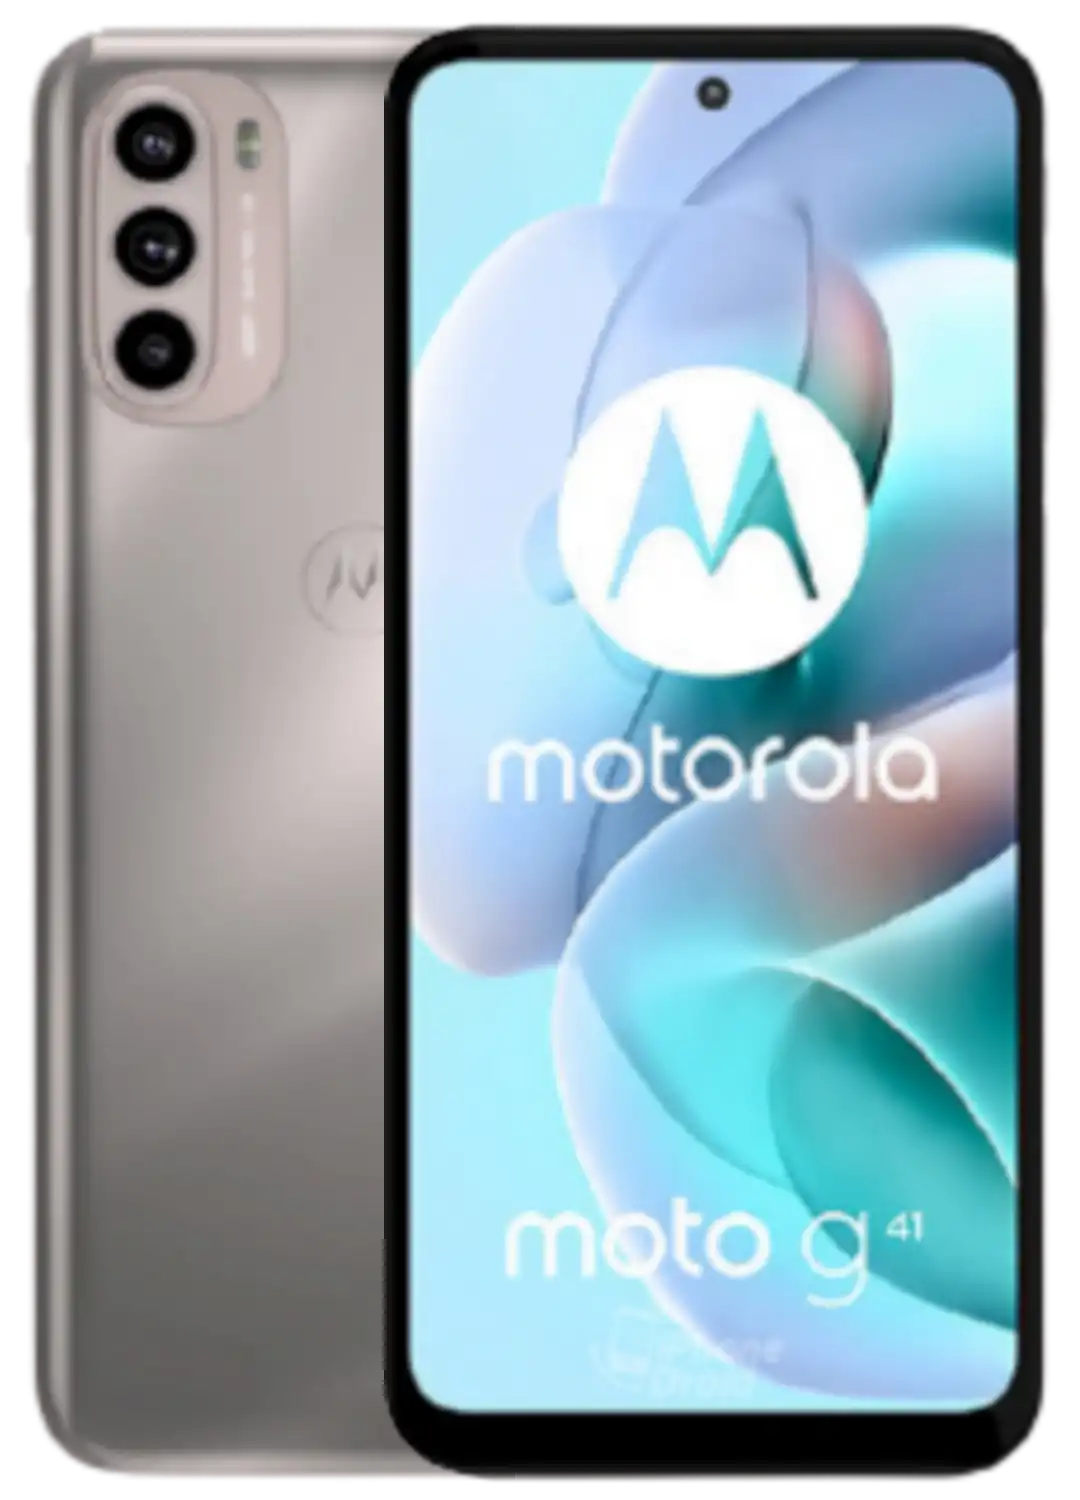 Motorola Moto G41 – Full Specifications